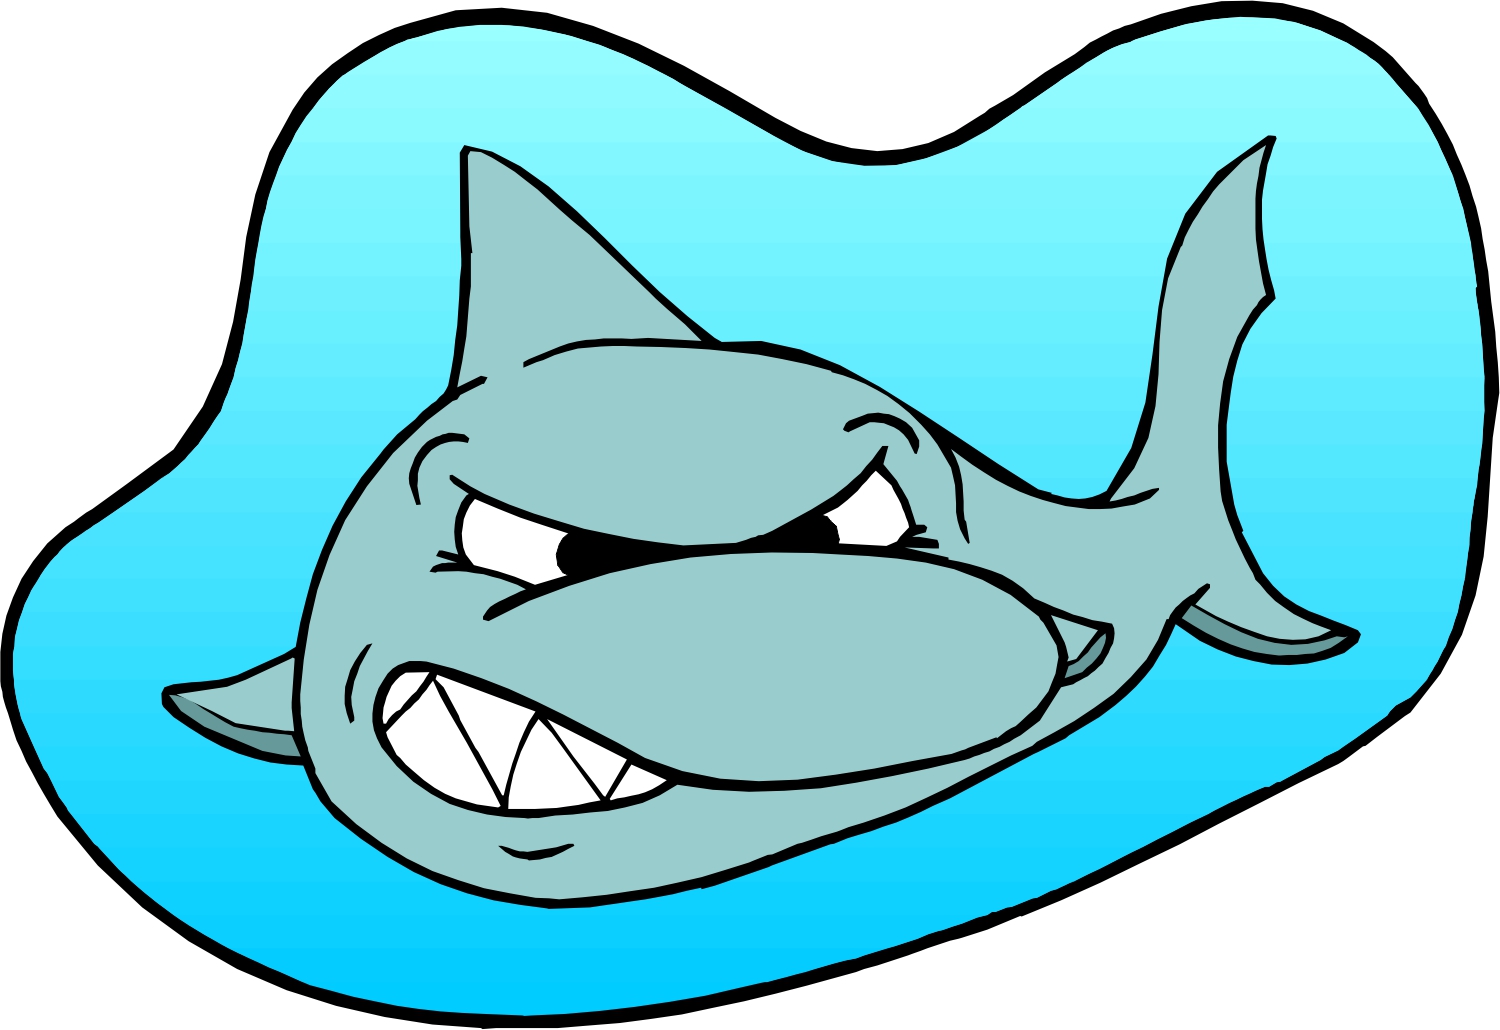 Cartoon Great White Shark - ClipArt Best